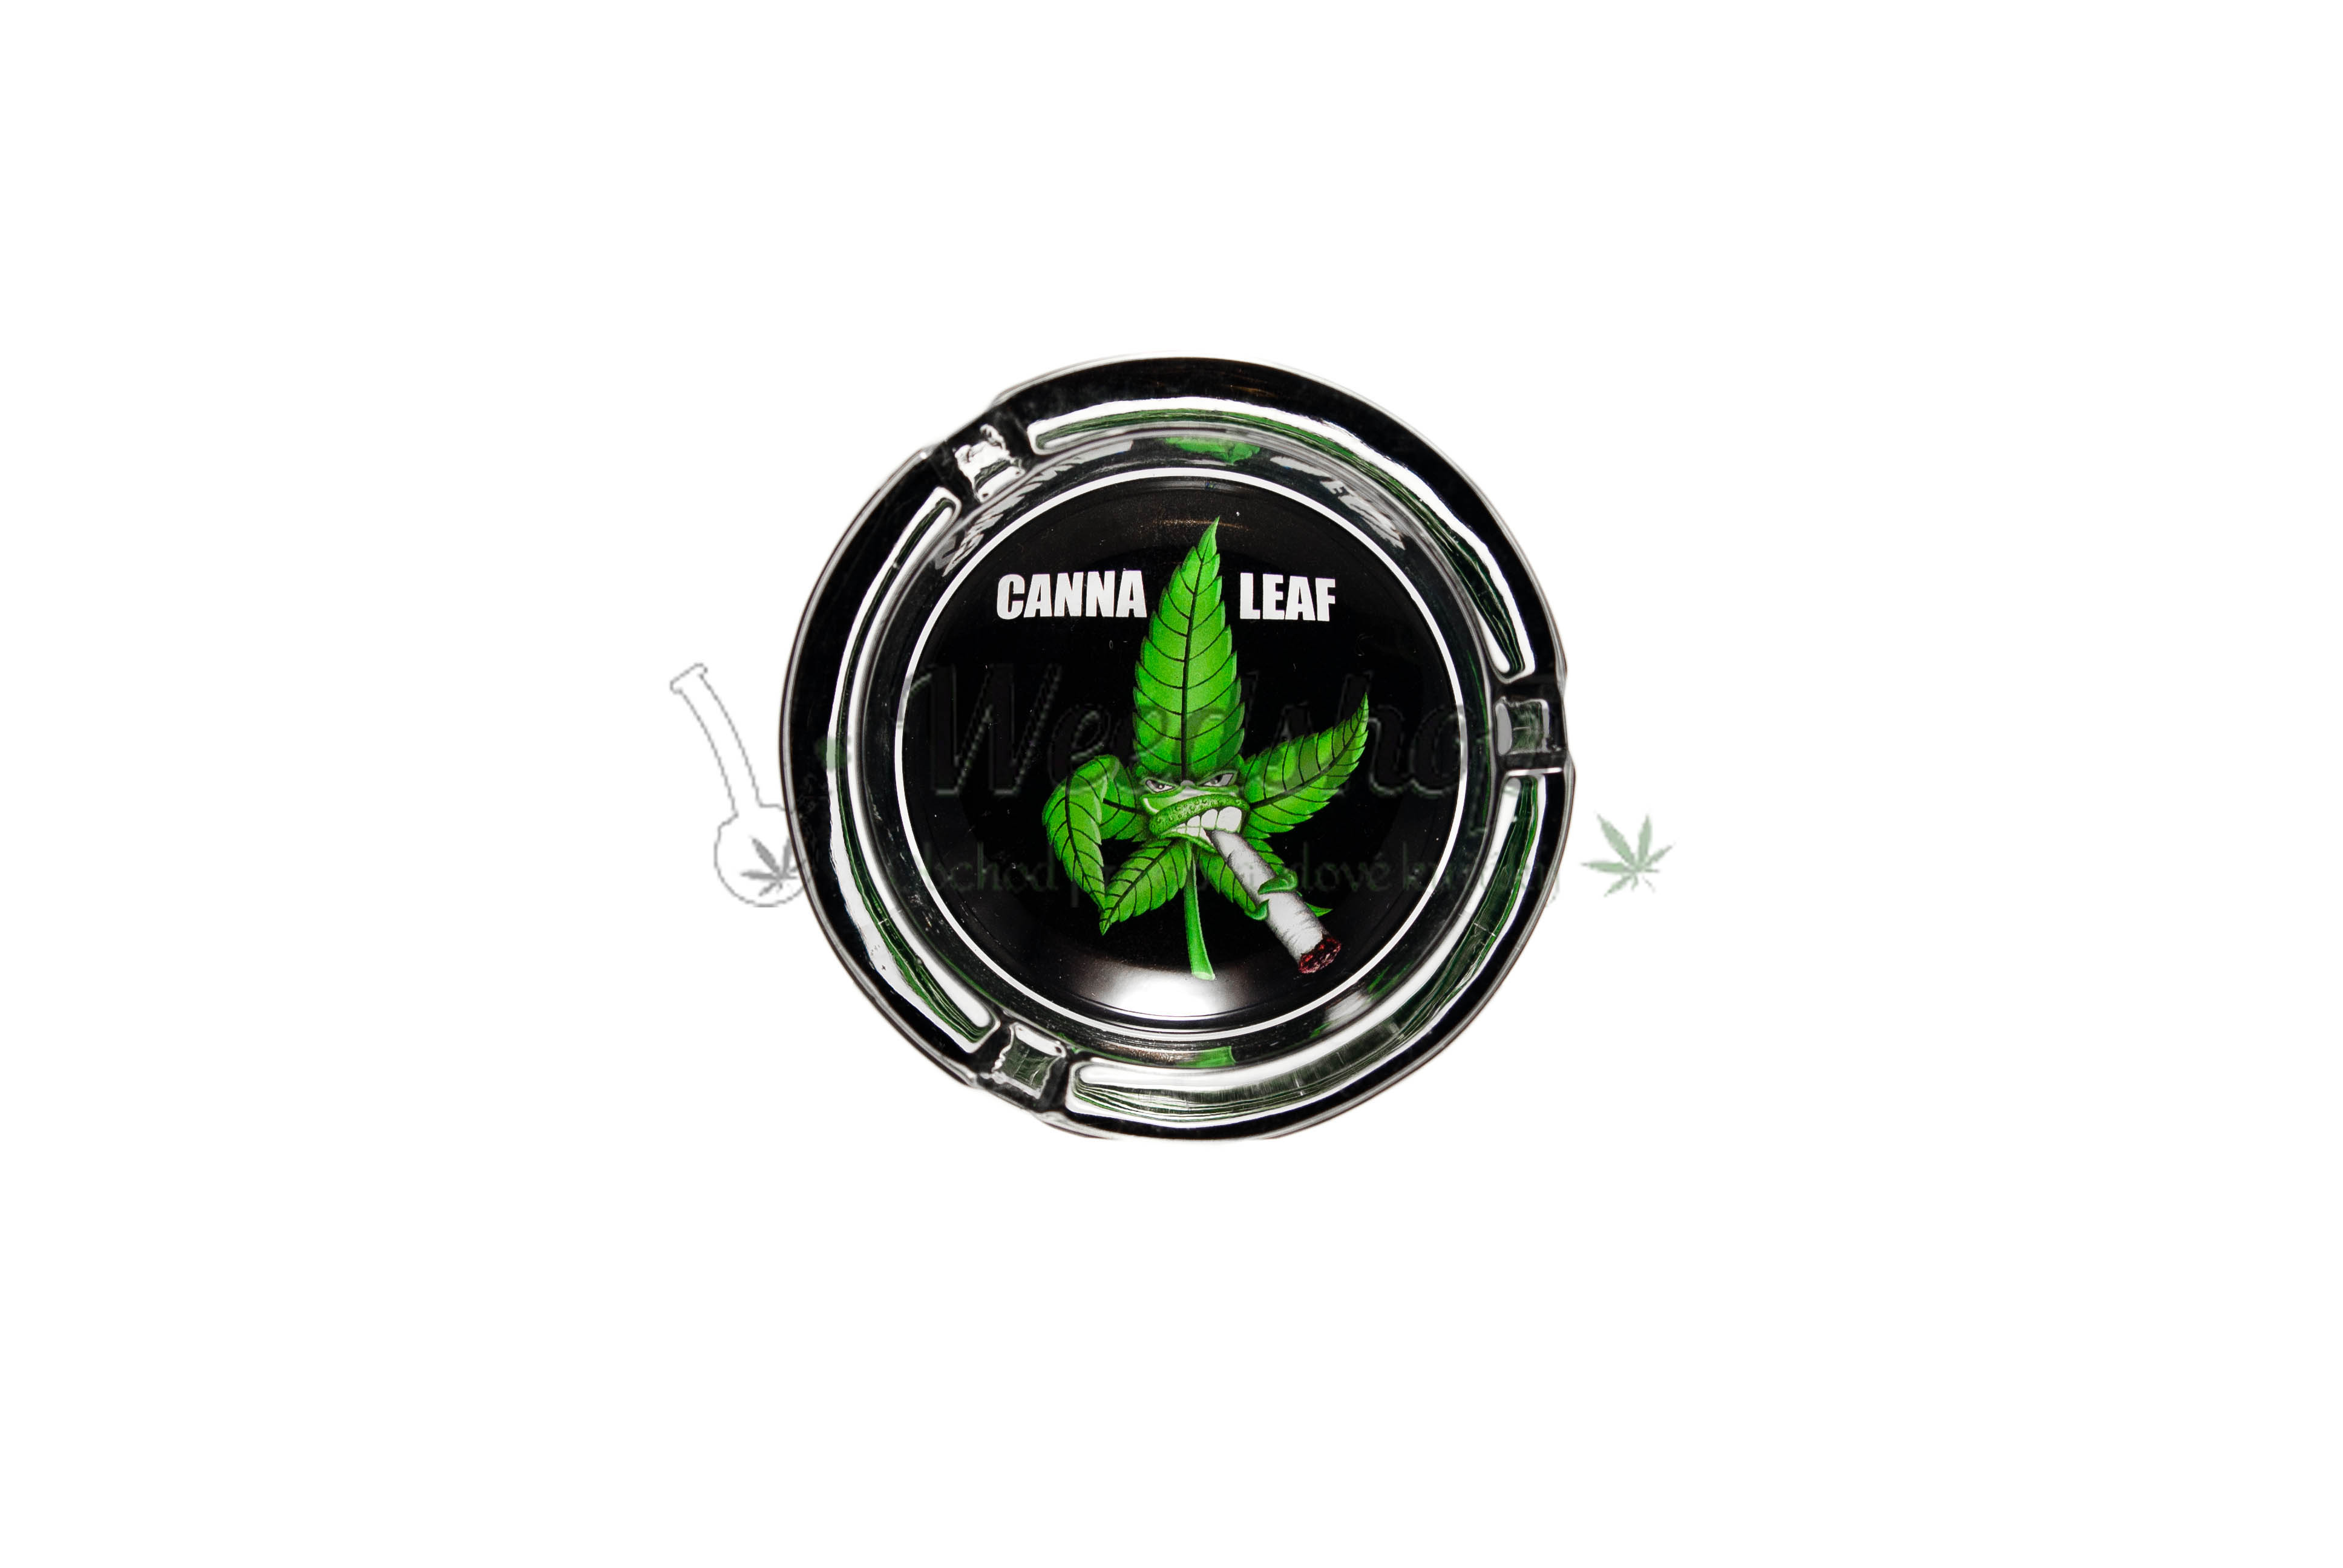 WeedShop Malý skleněný popelník - Canna Heroes Varianty: CannaLeaf